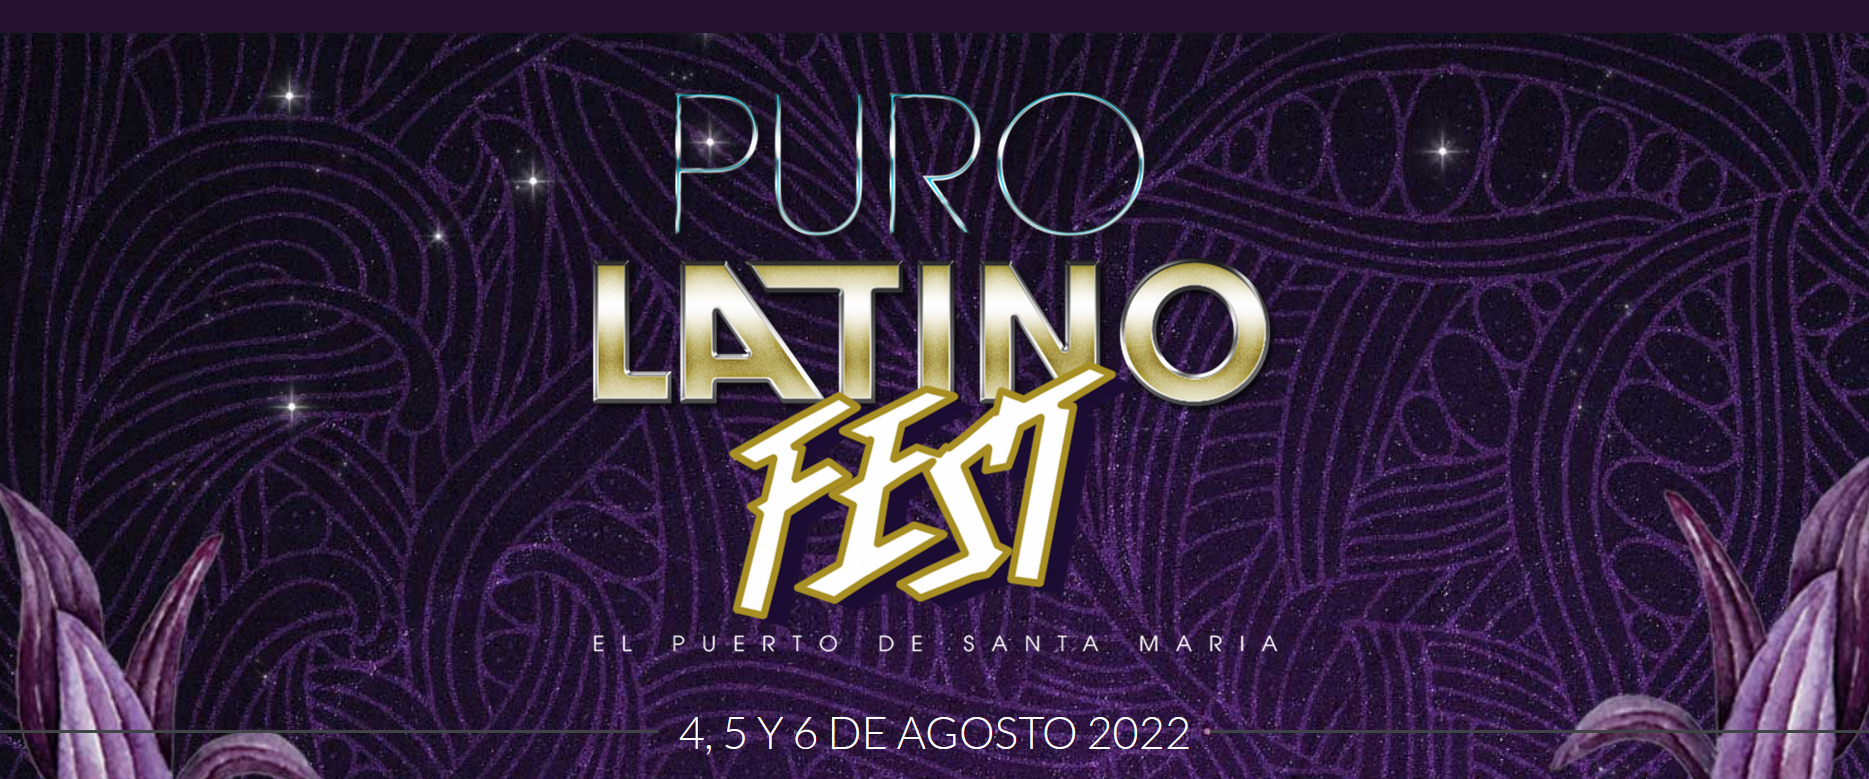 Puro Latino Fest - Puerto de Santa María